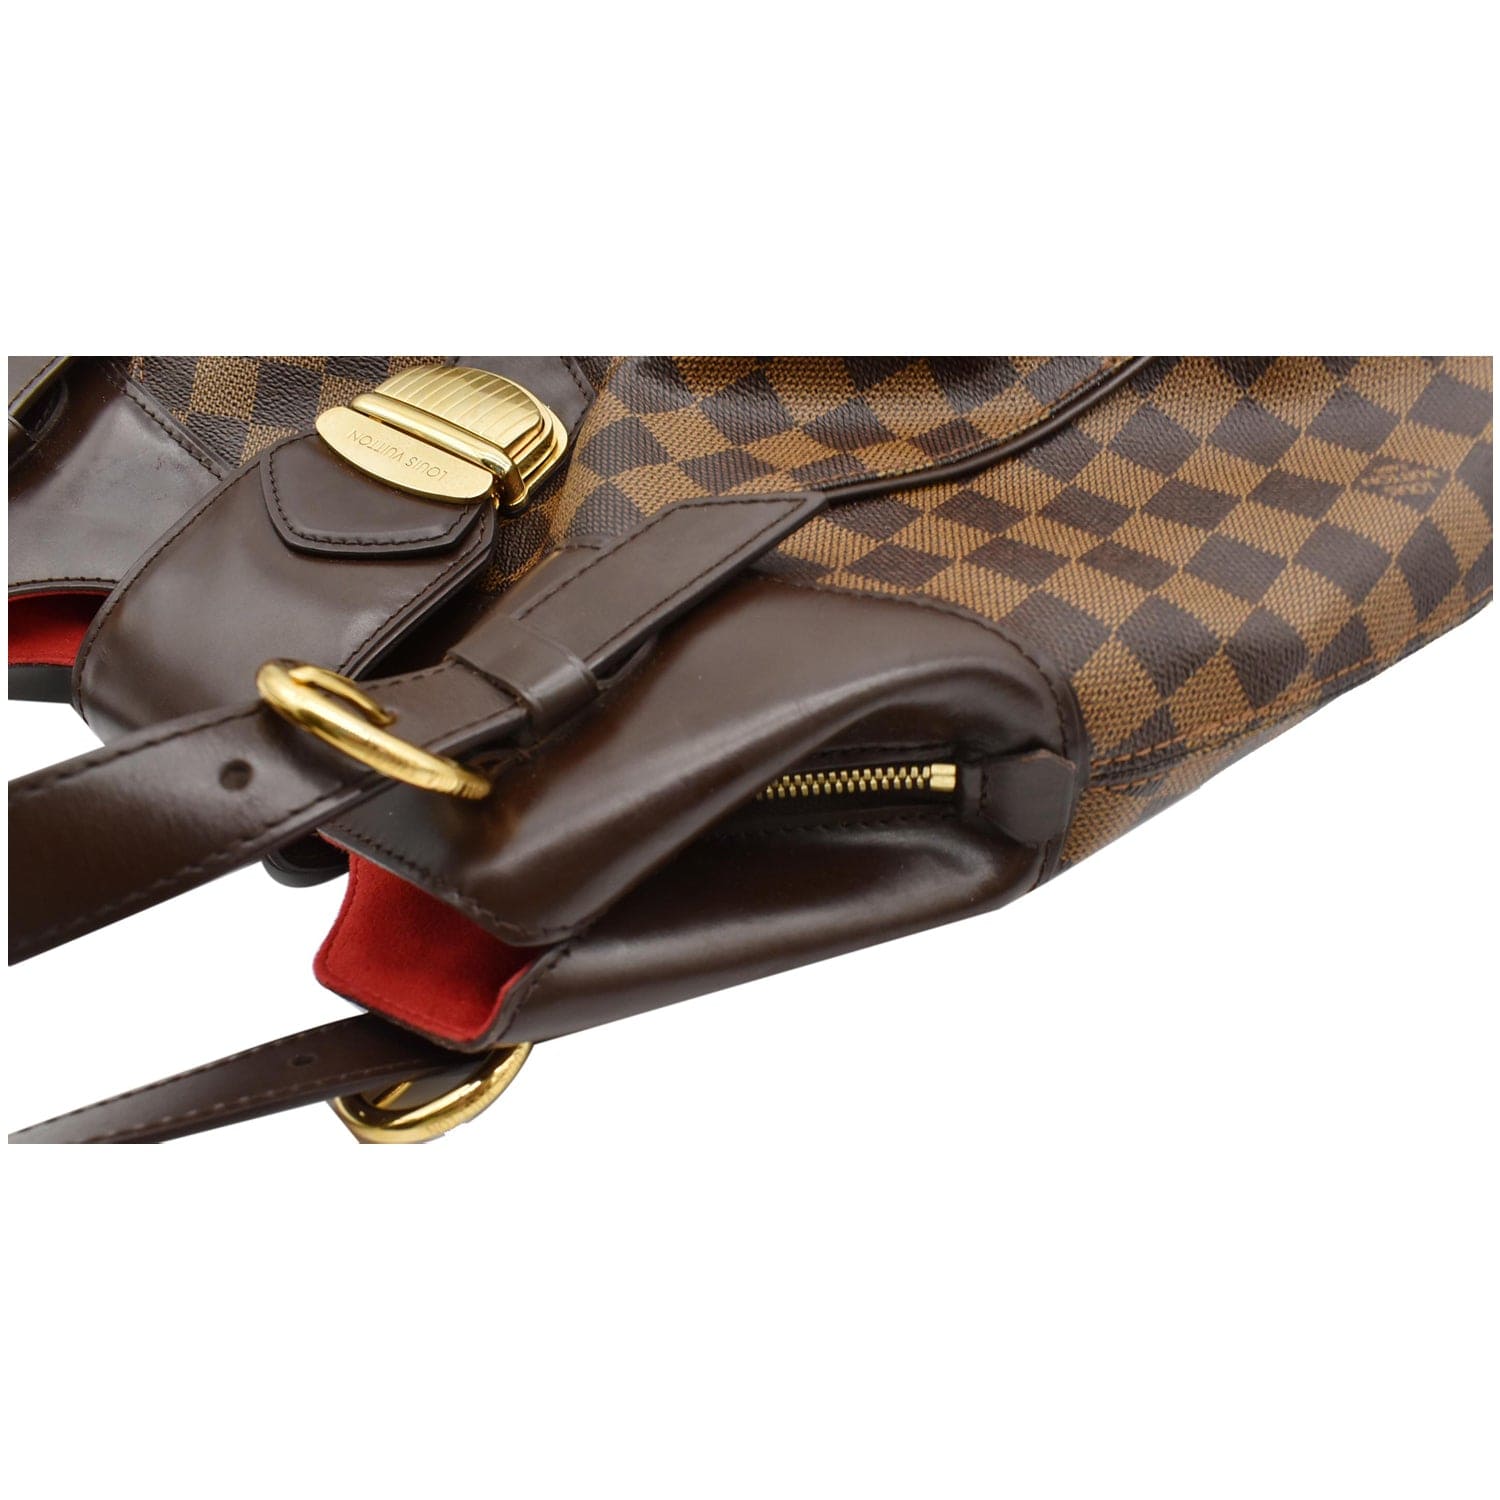 100% Authentic Louis Vuitton Sistina GM Damier Ebene Shoulder Bag